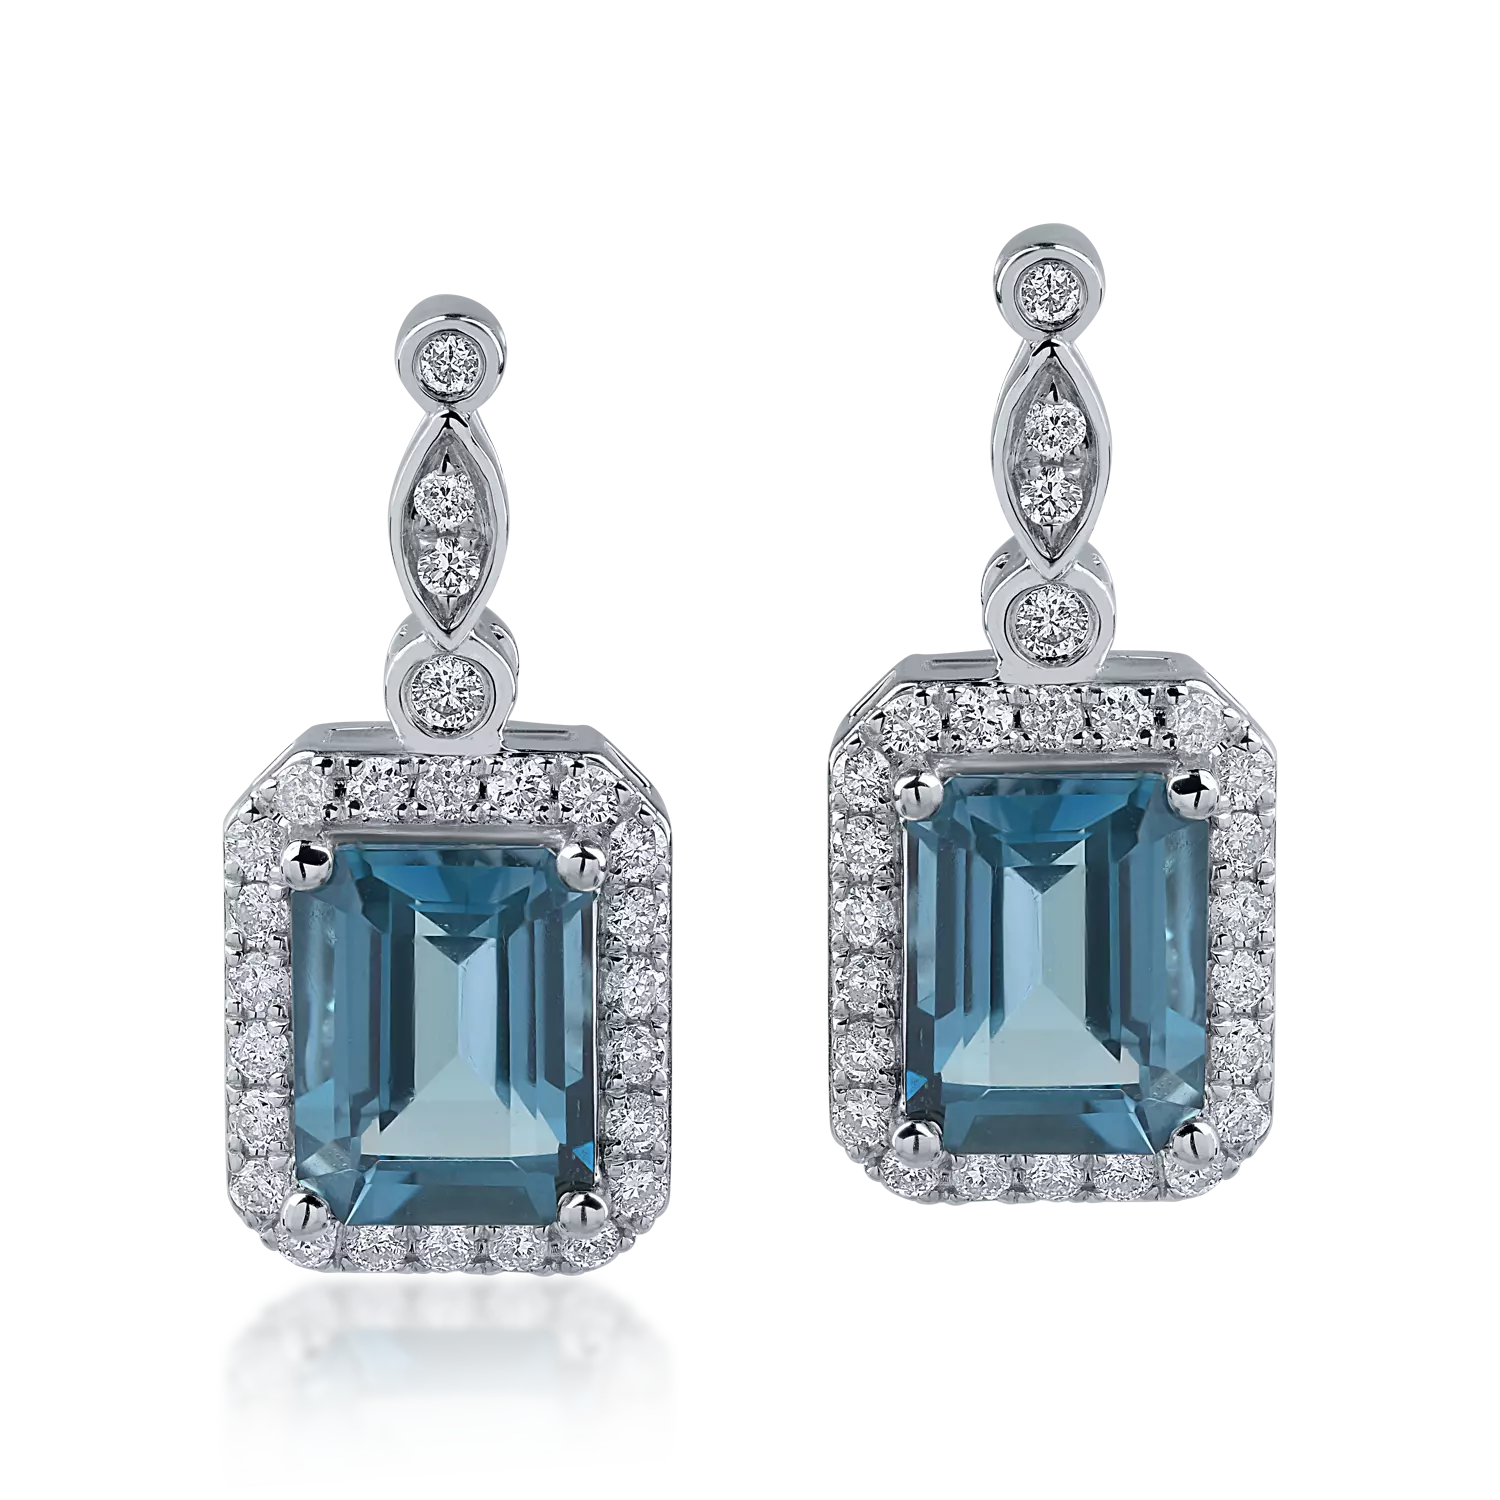 Fehérarany fülbevaló 1.58ct londoni kék topázokkal és 0.308ct gyémántokkal